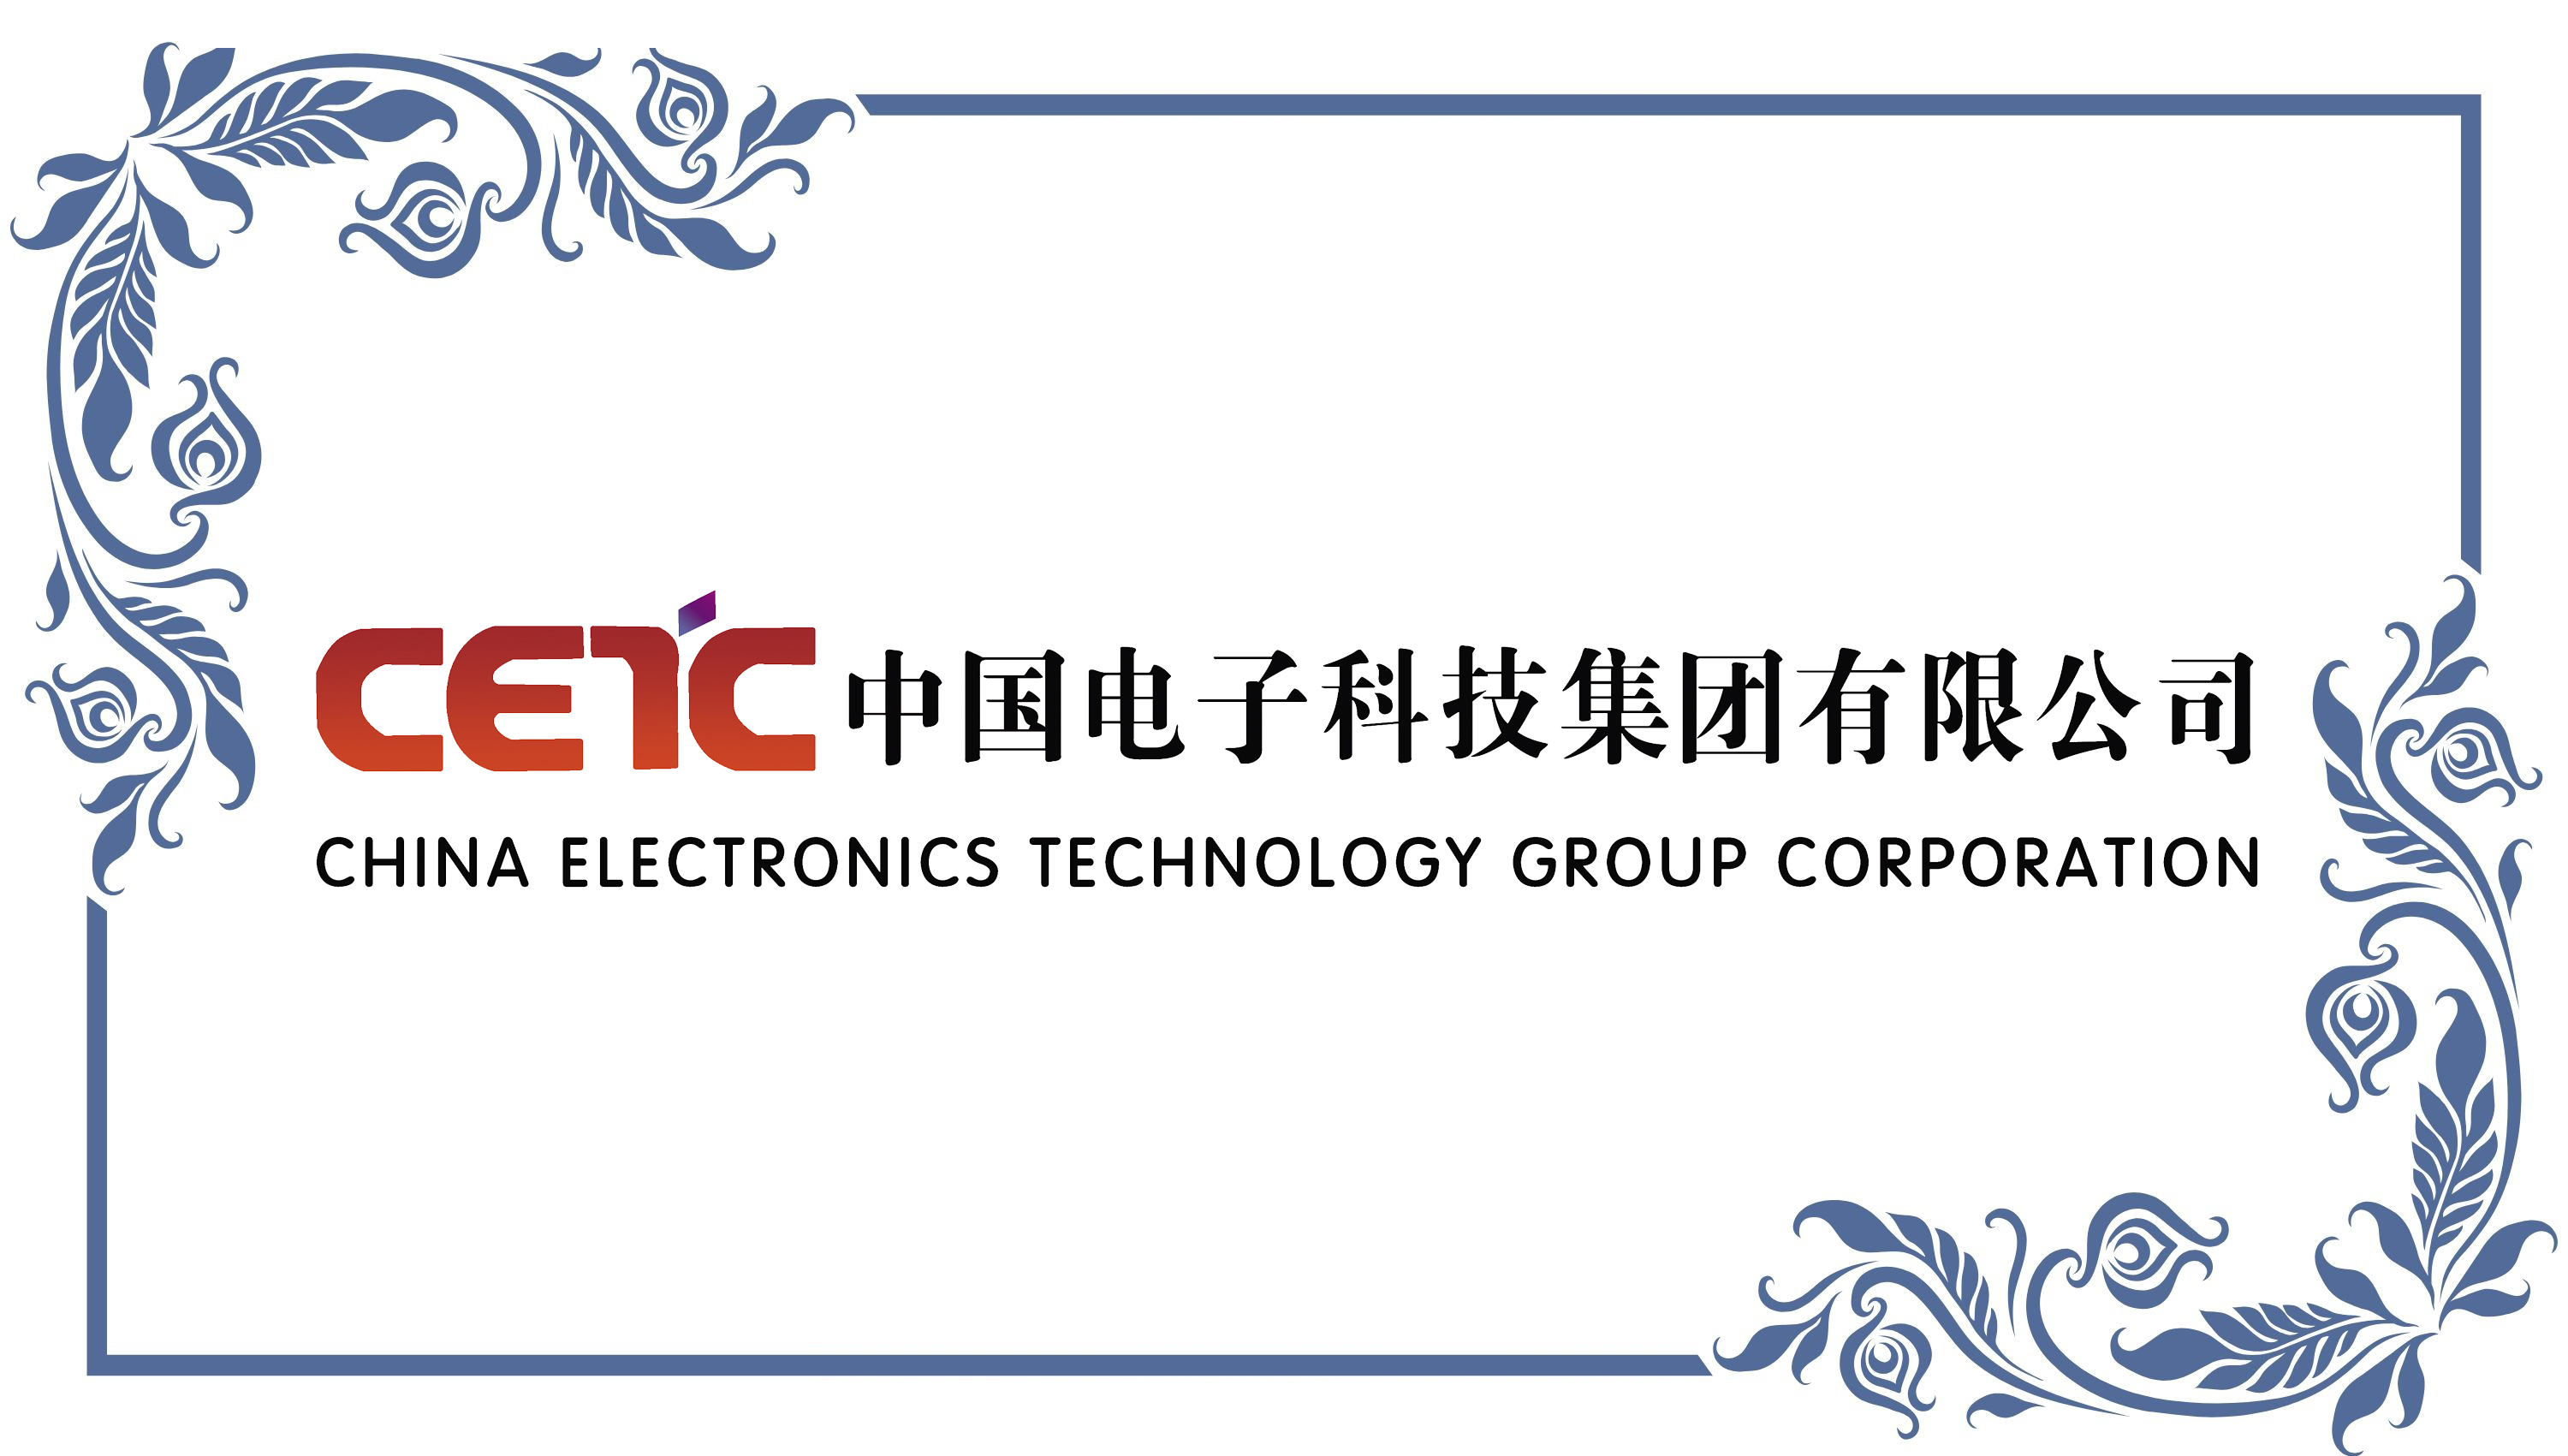 中国电子科技集团公司